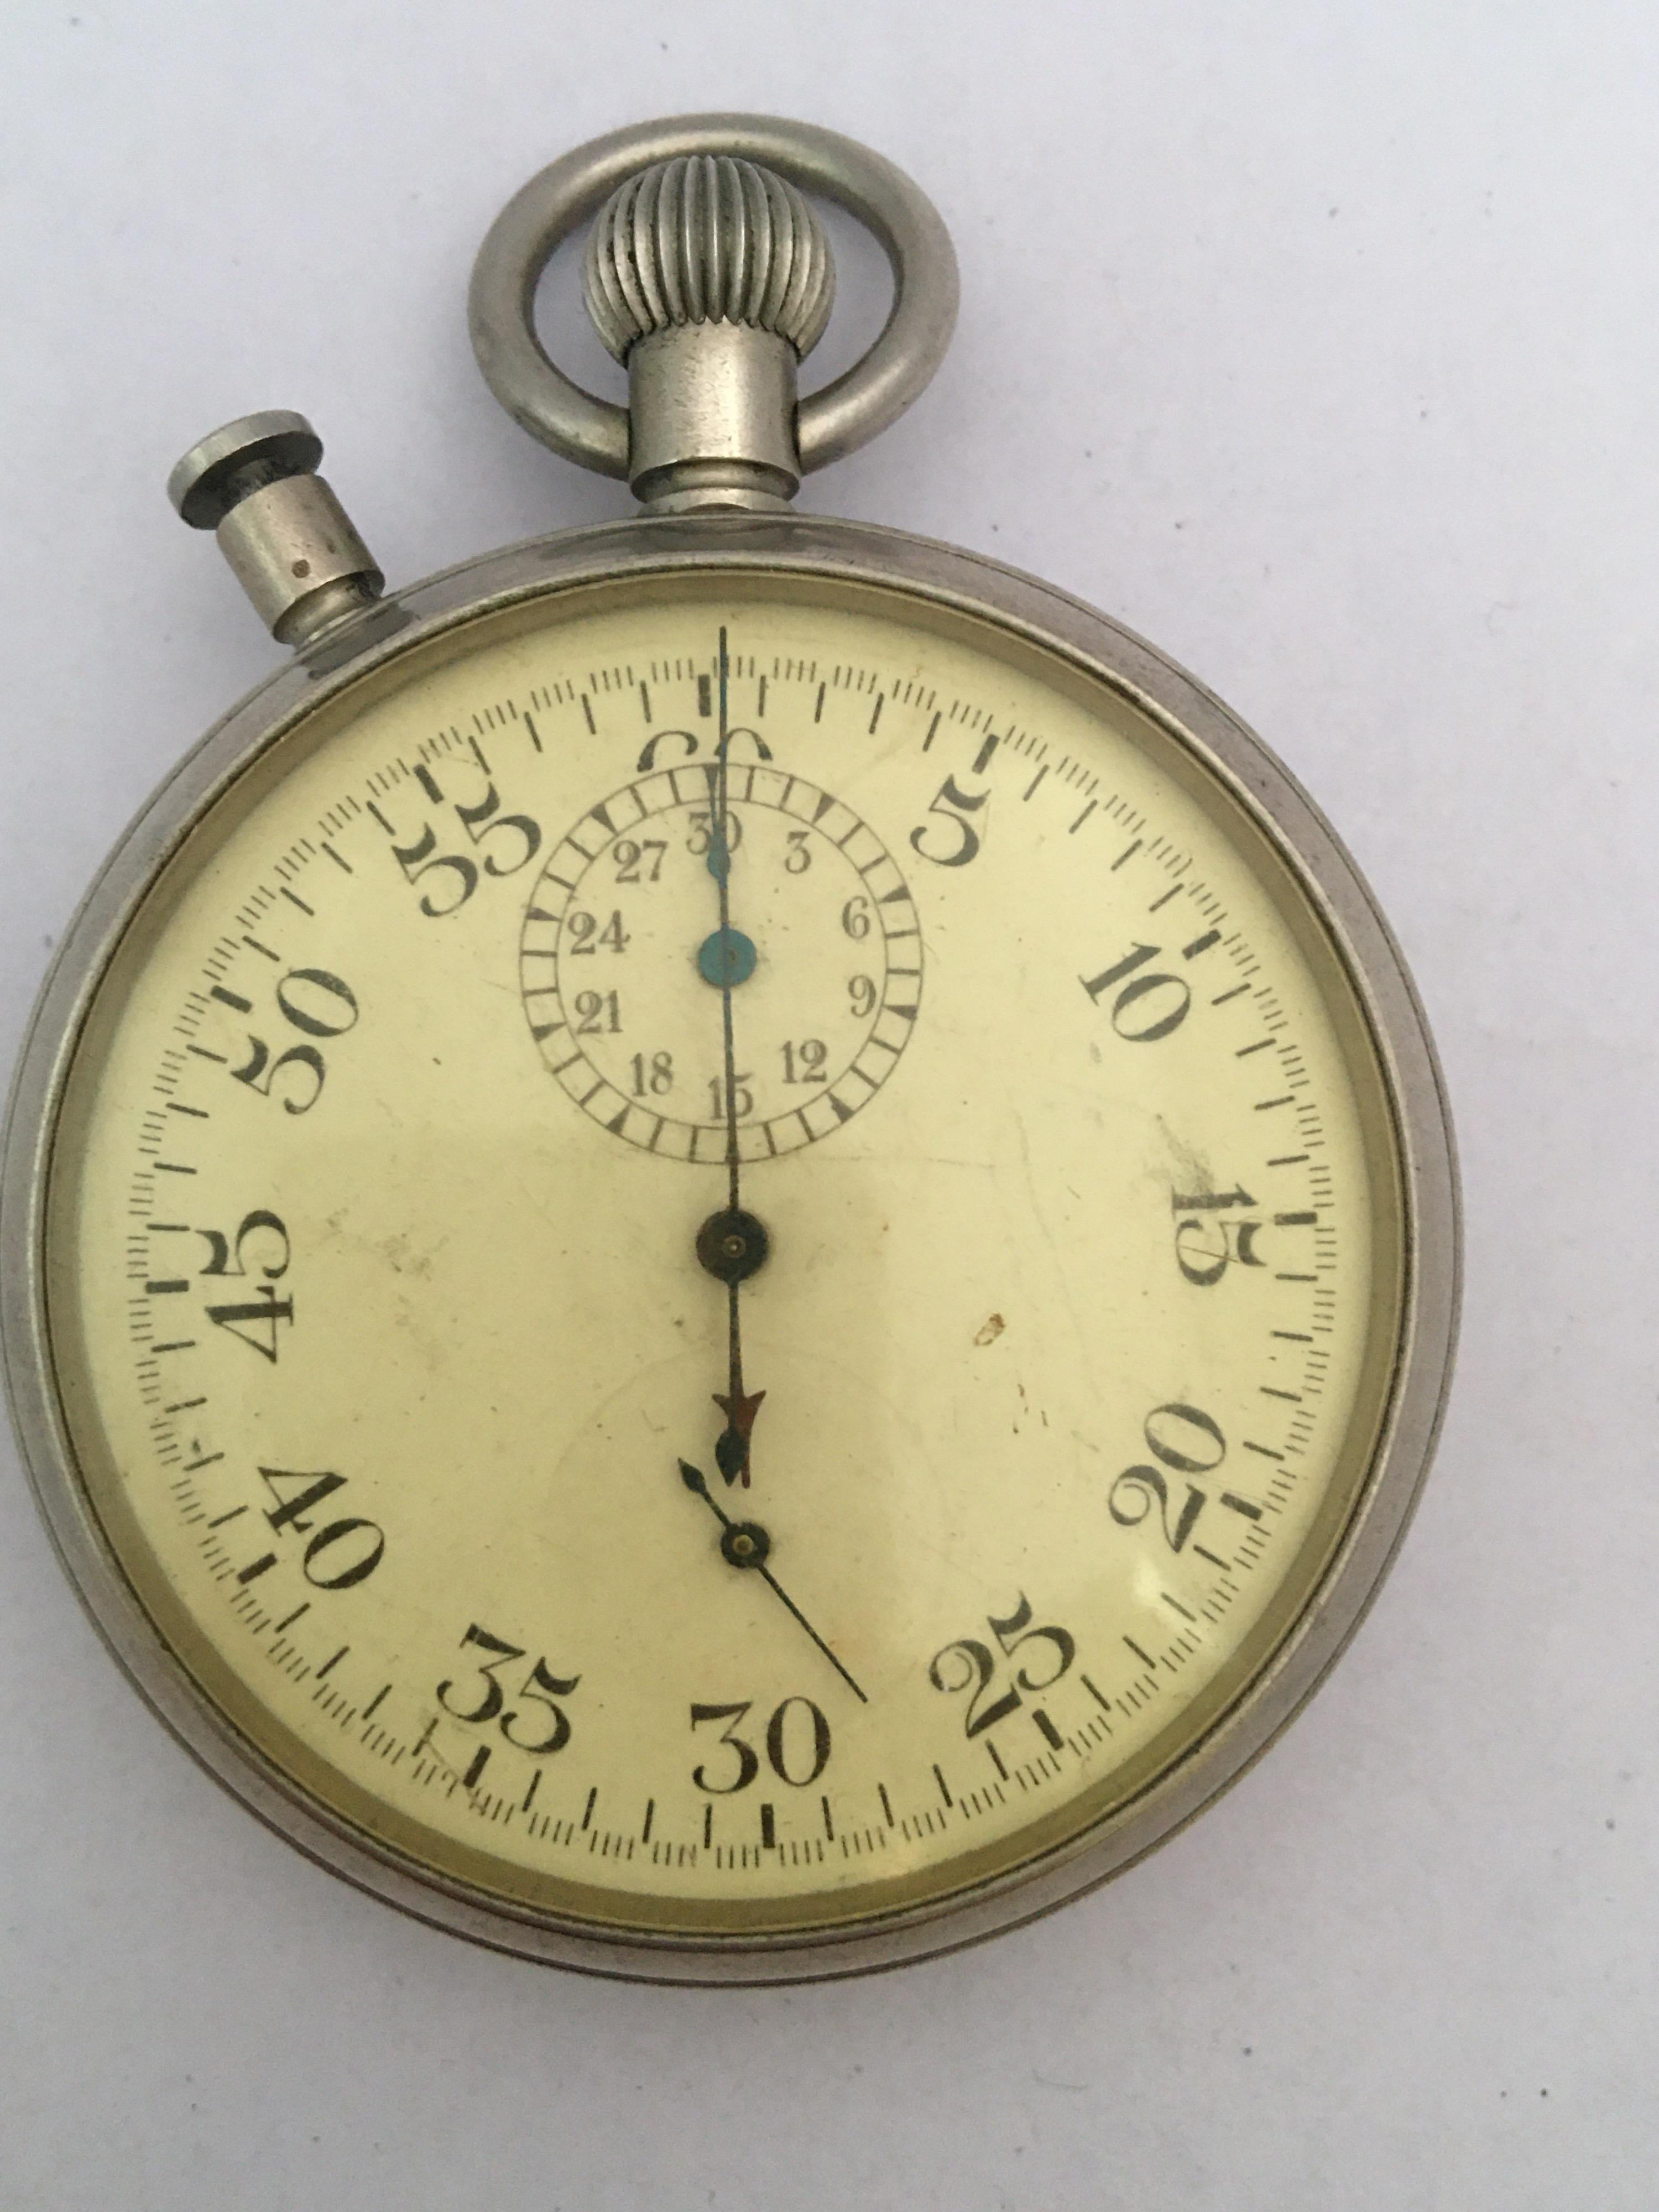 Rare chronomètre chronographe militaire des années 1940 avec rattrapante PATT. 4 No. 11643 5